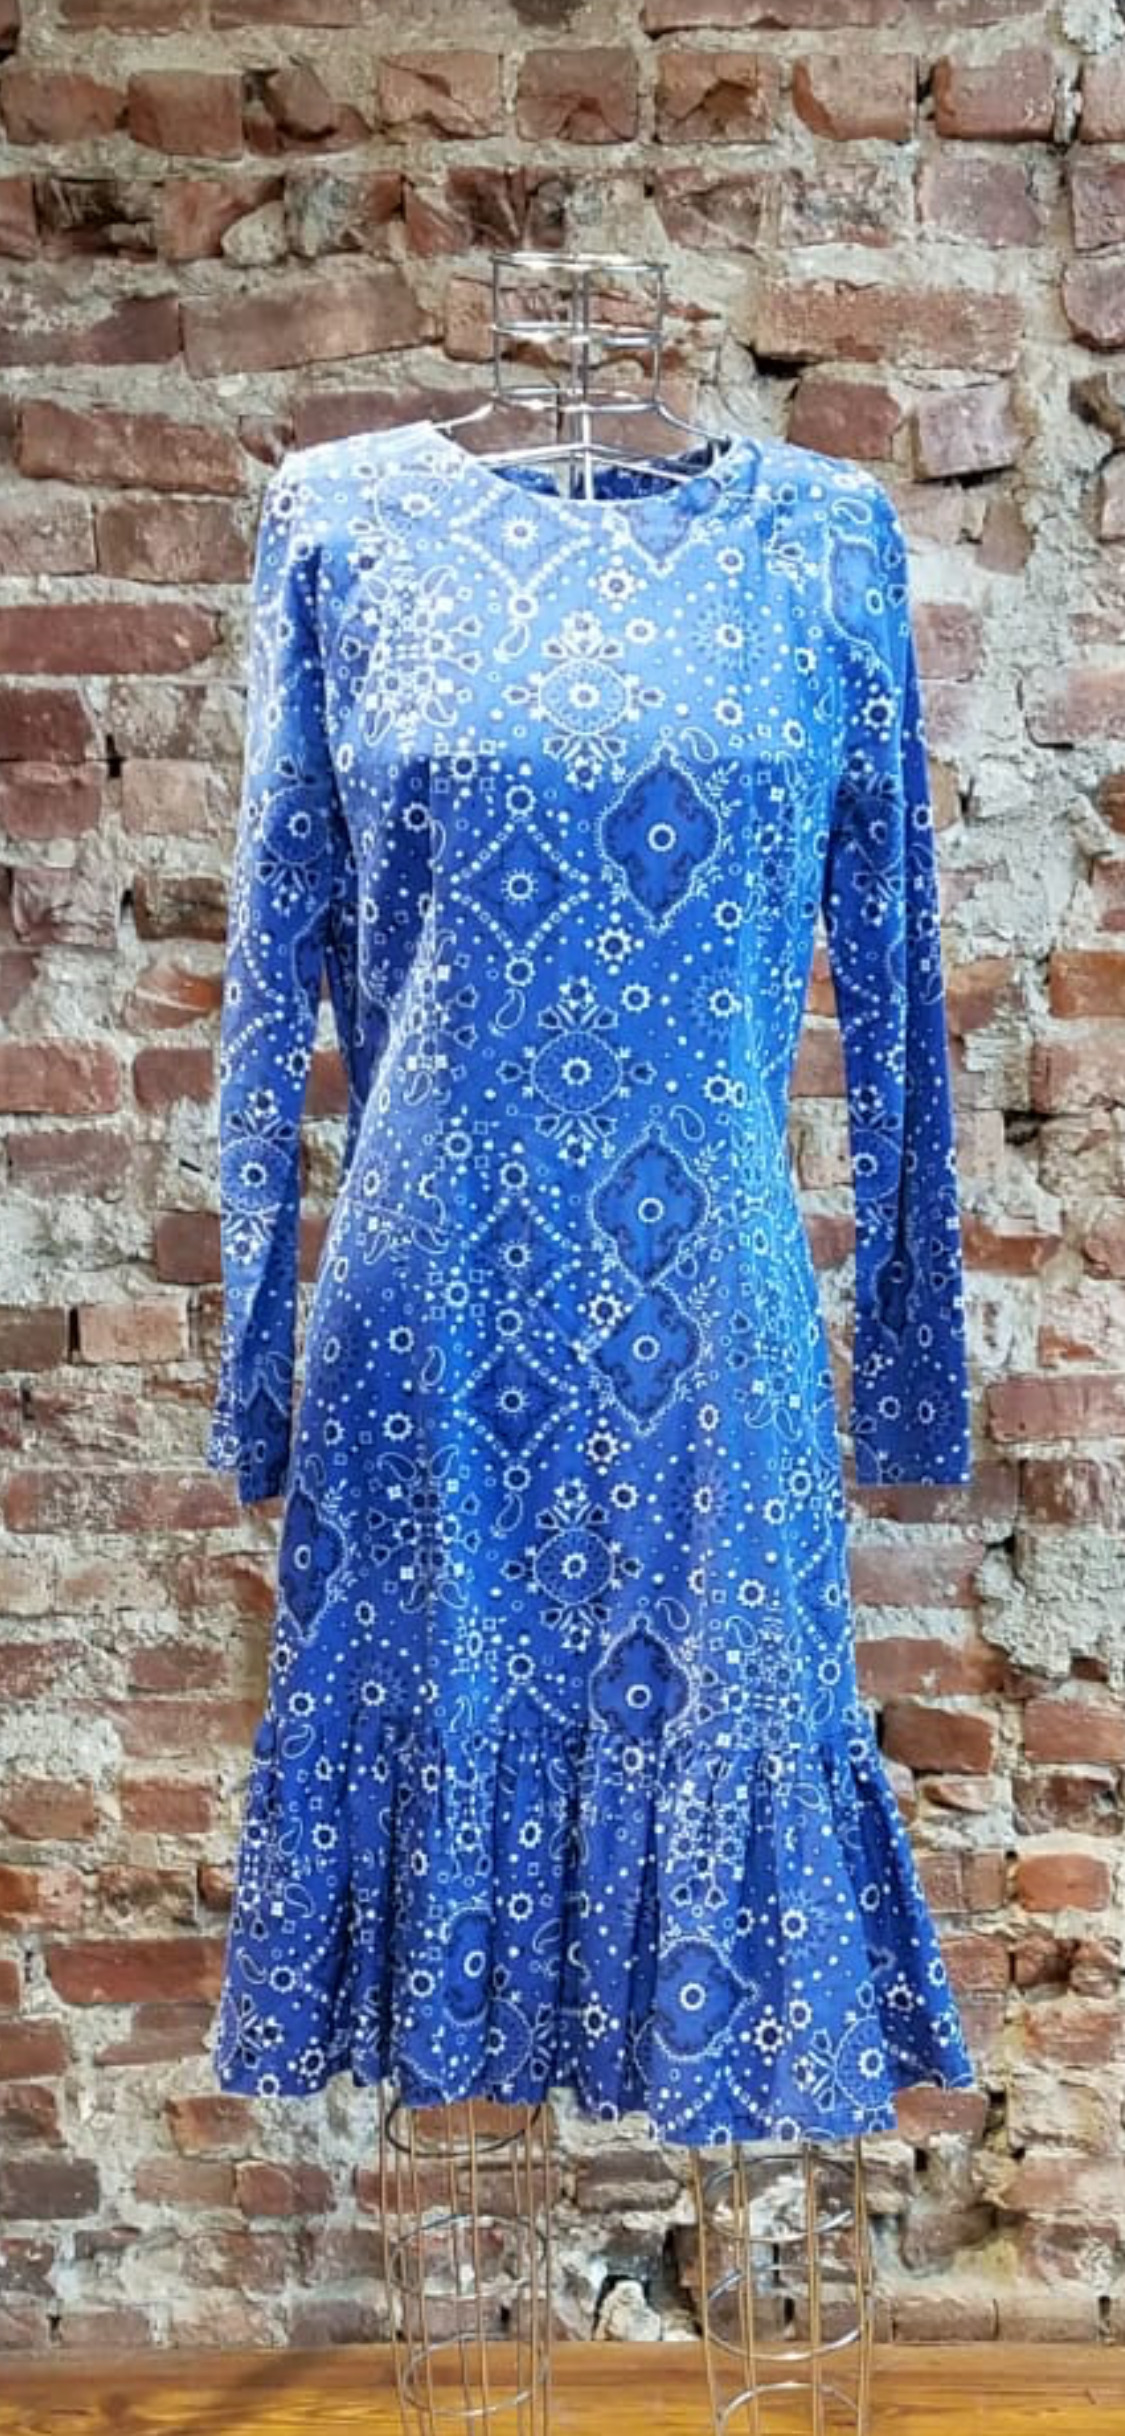 Blue bandana motifs tennis dress